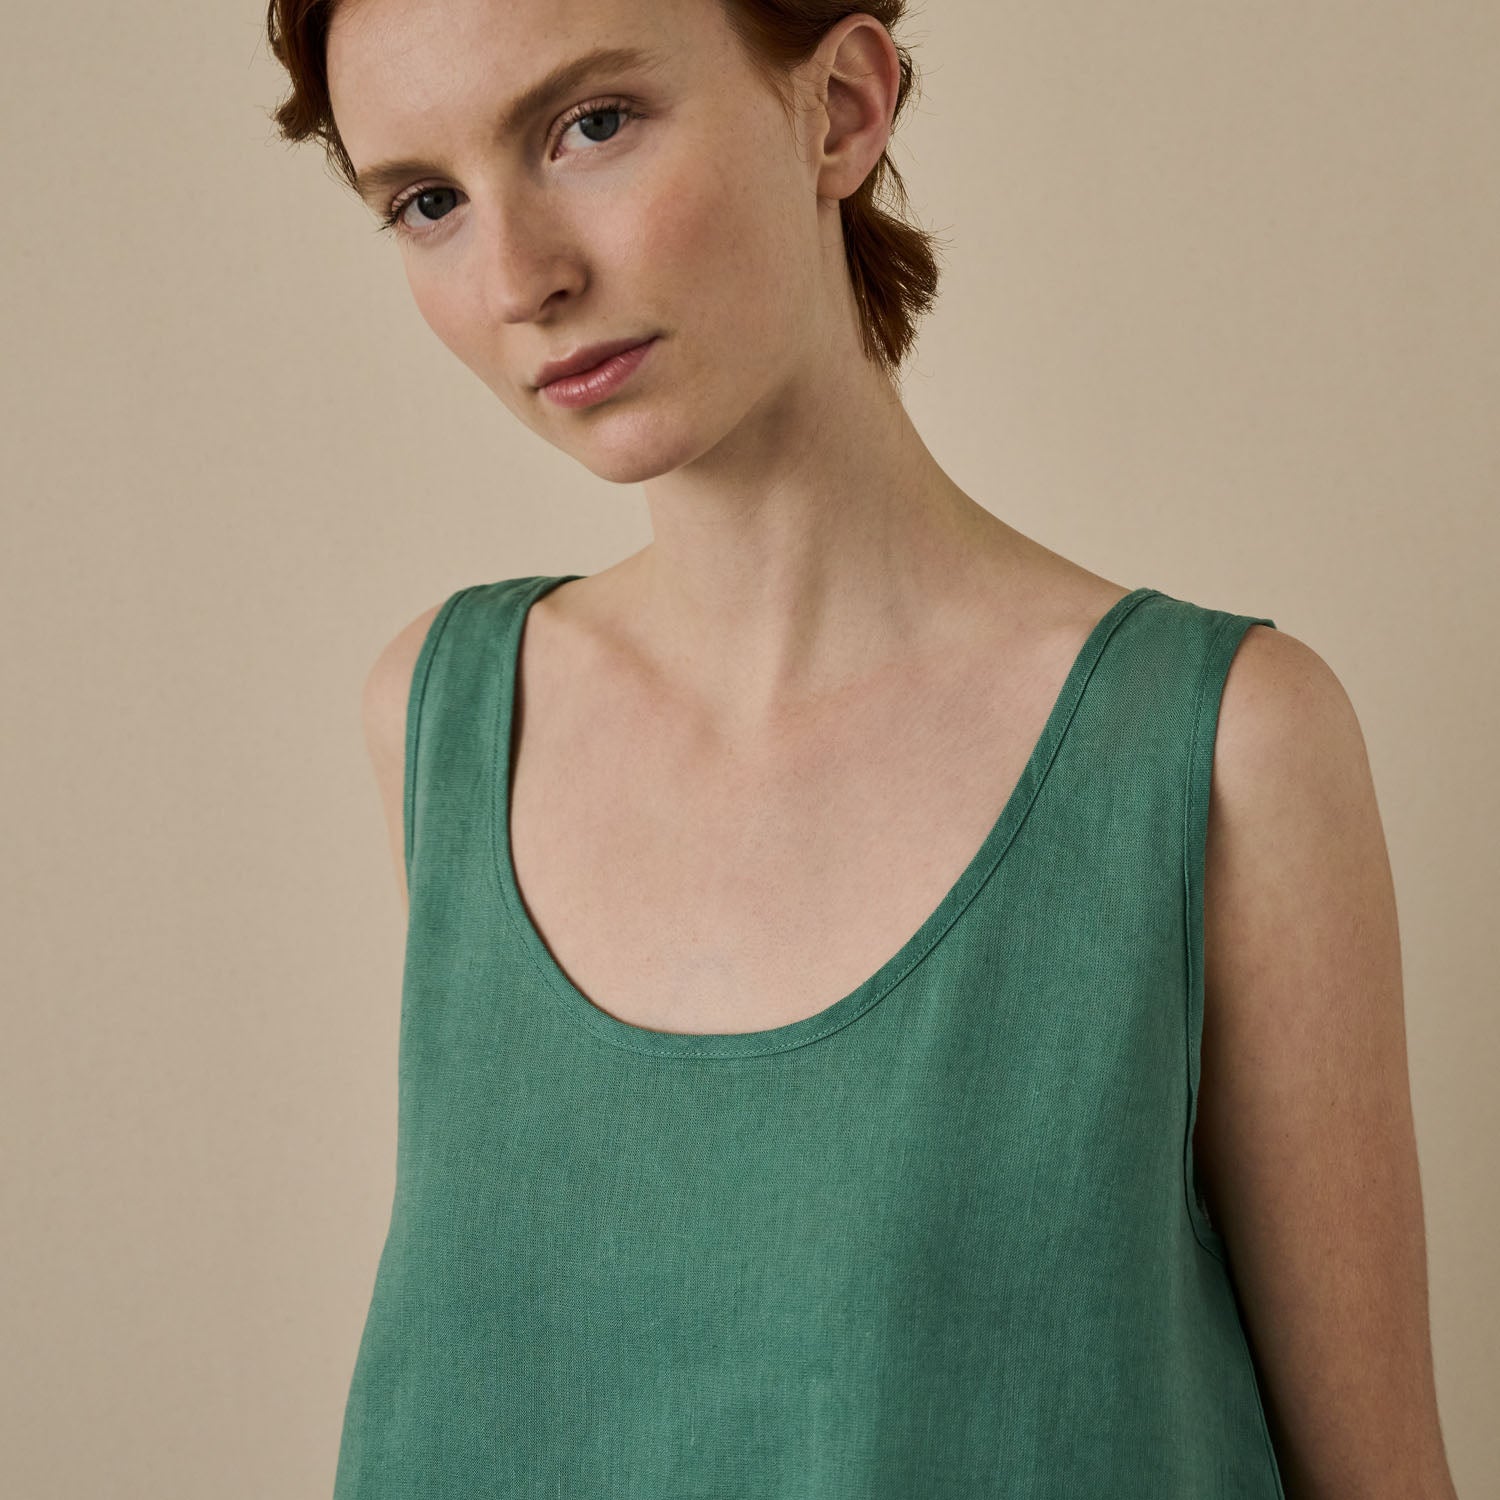 Tranquil Green Linen Women's Cami Top